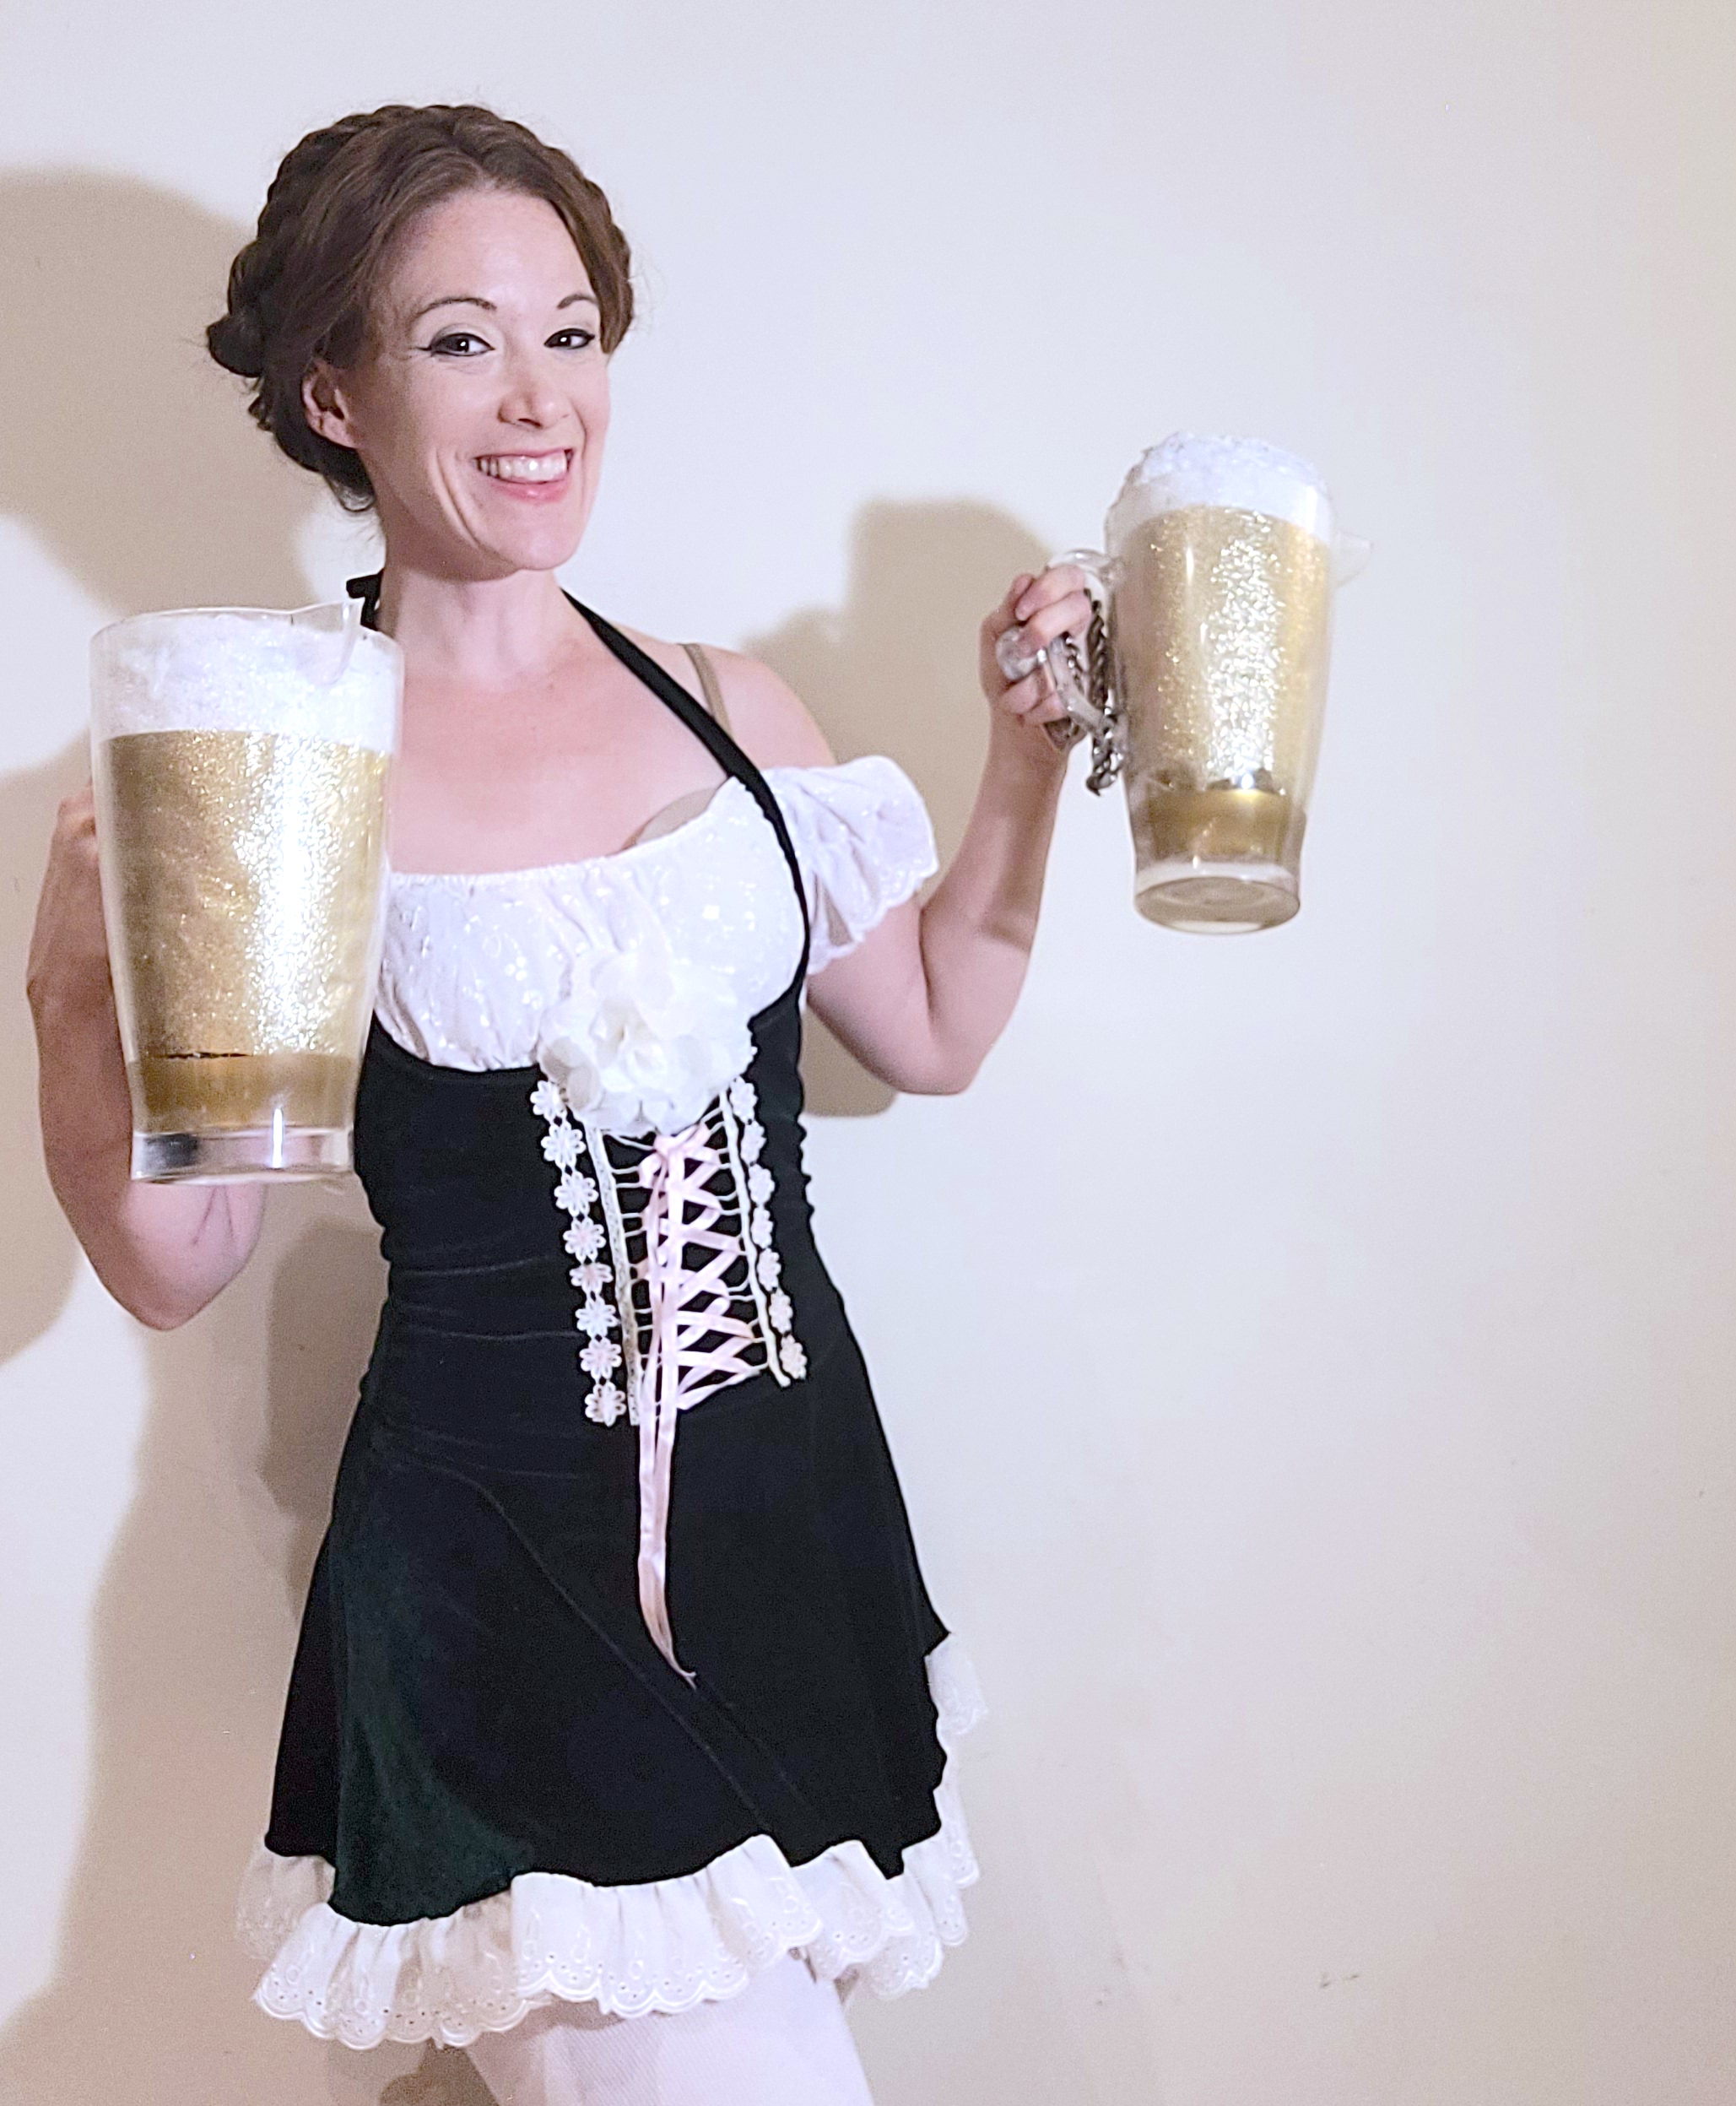 hoop you oktoberfest characters 2022 female beer poi skills